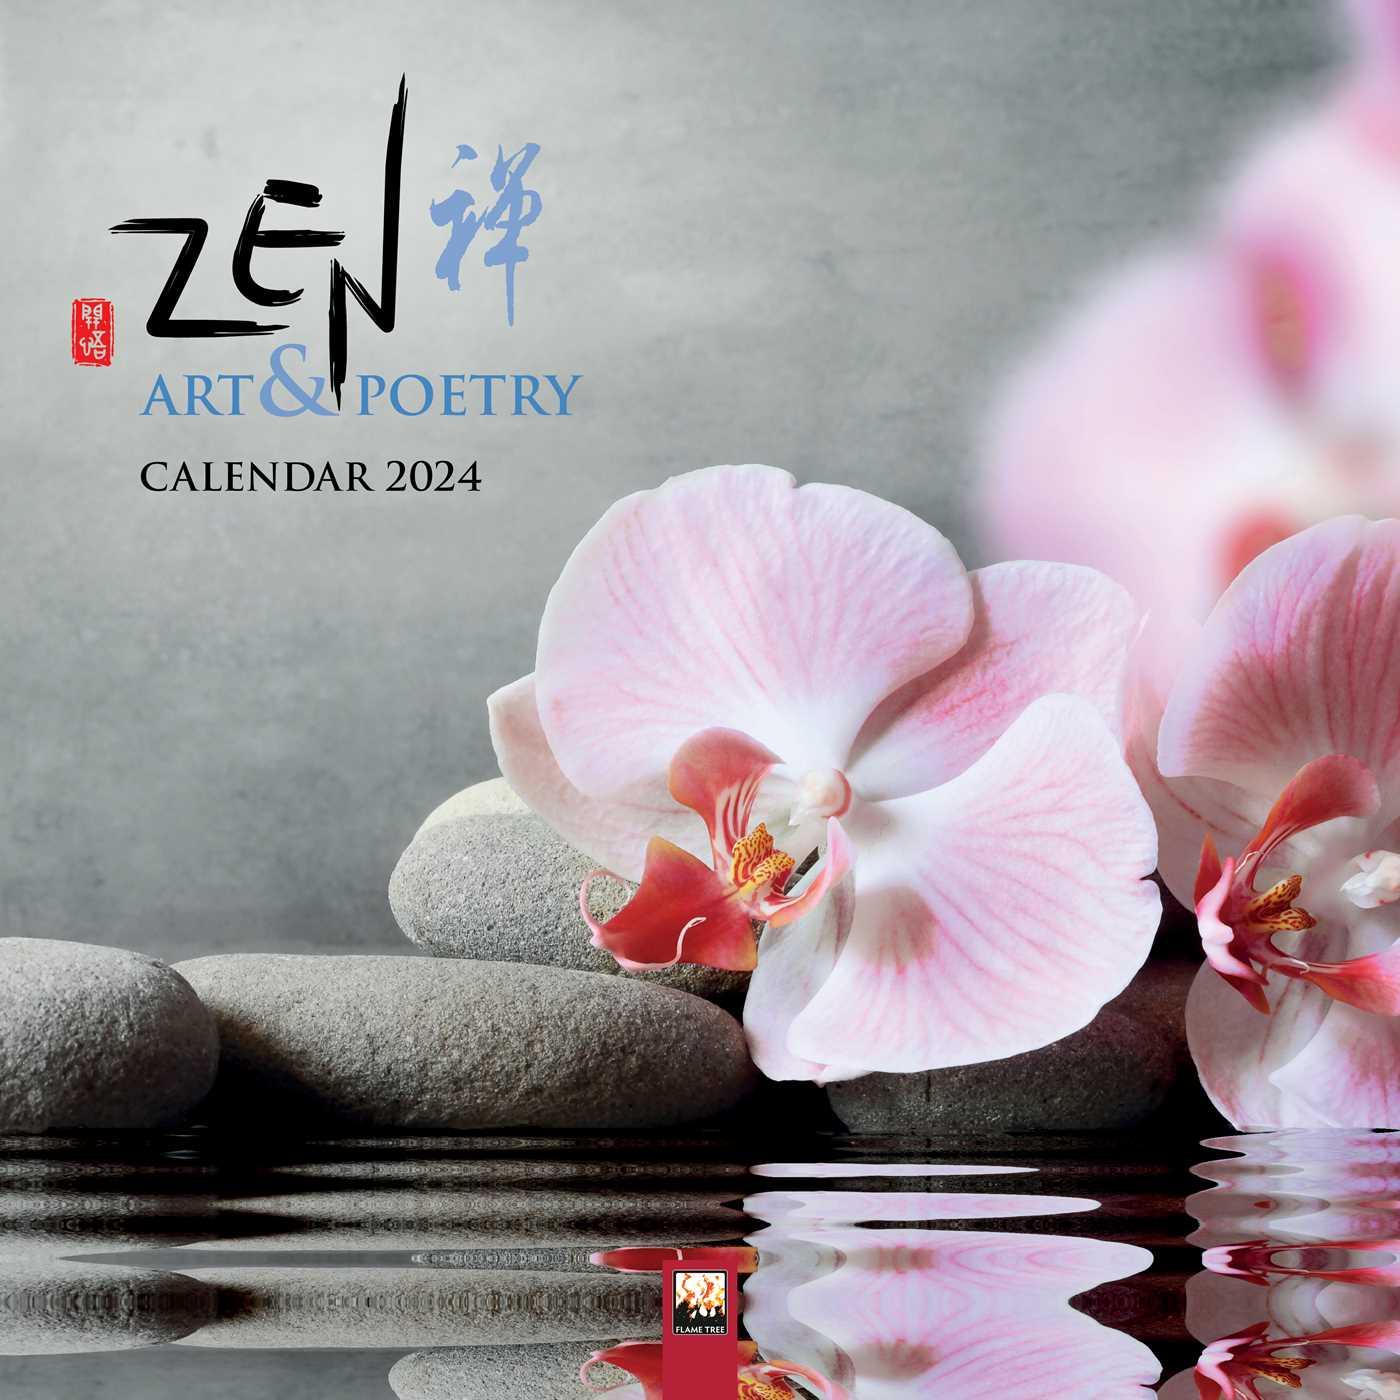 Календар/тефтер Zen Art & Poetry Wall Calendar 2024 (Art Calendar) 